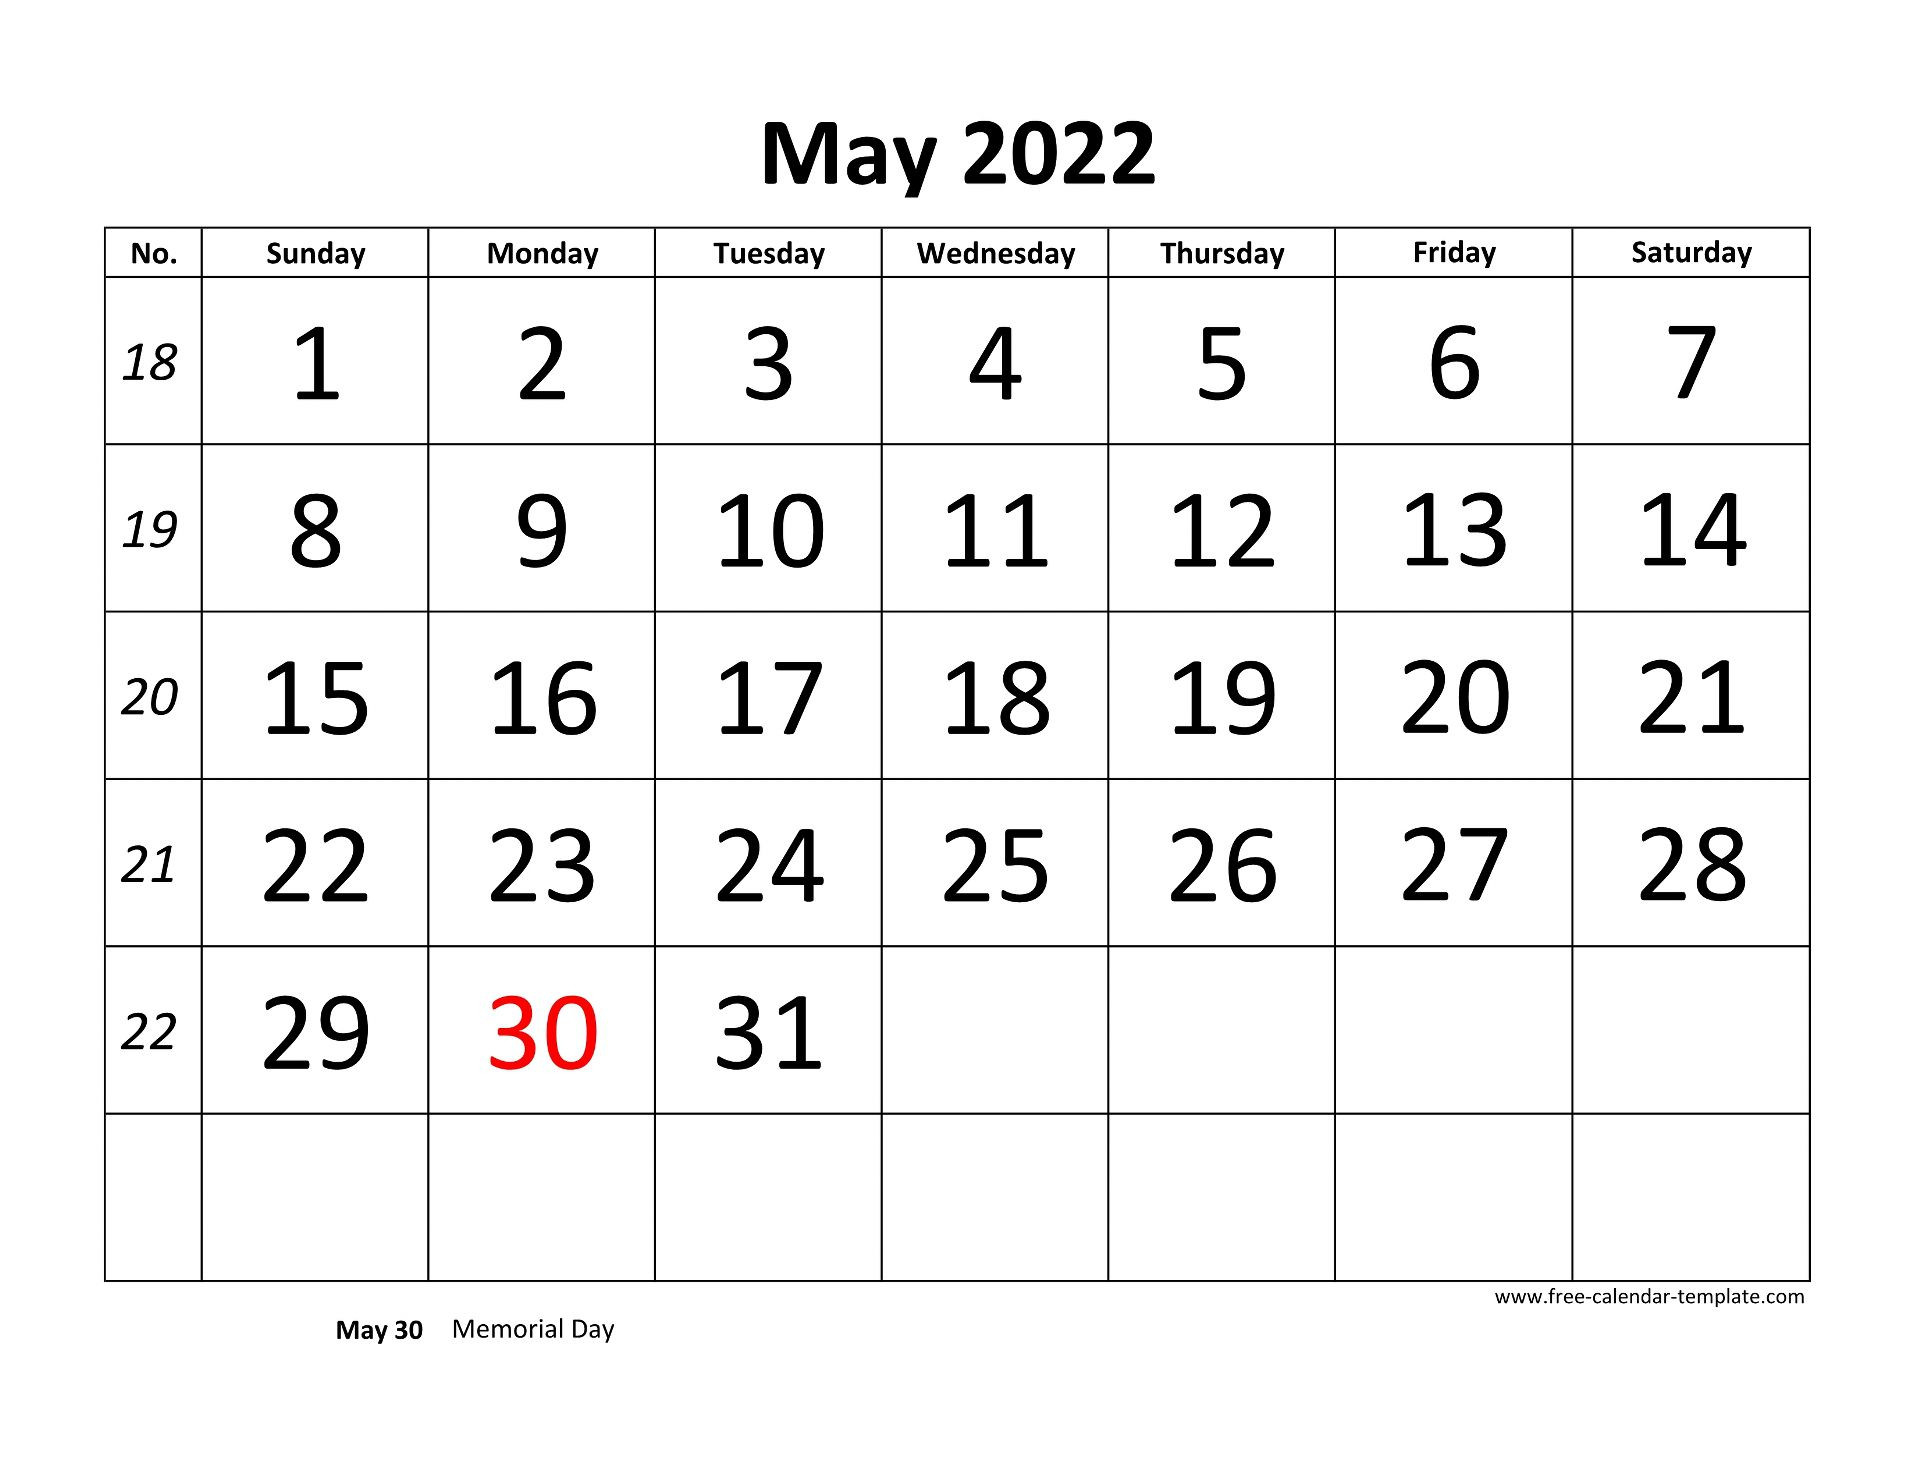 May 2022 Free Calendar Tempplate | Free-Calendar-Template  Free Calendar Template 2022 Large